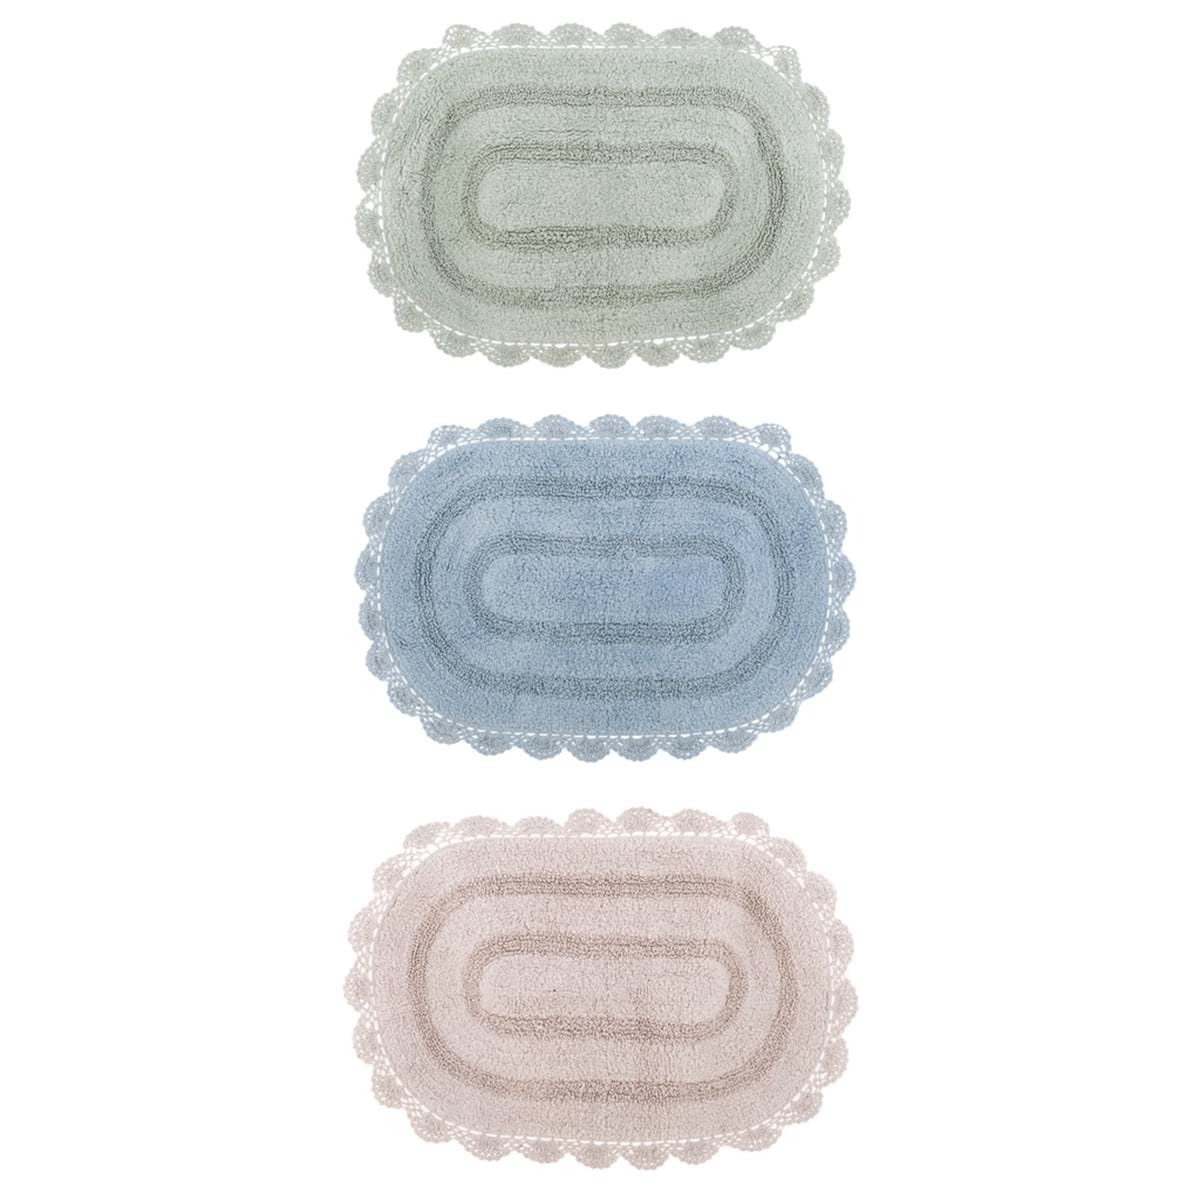 Tappeto ovale in cotone con crochet - 55x85 cm - Vari colori - Blanc Mariclo